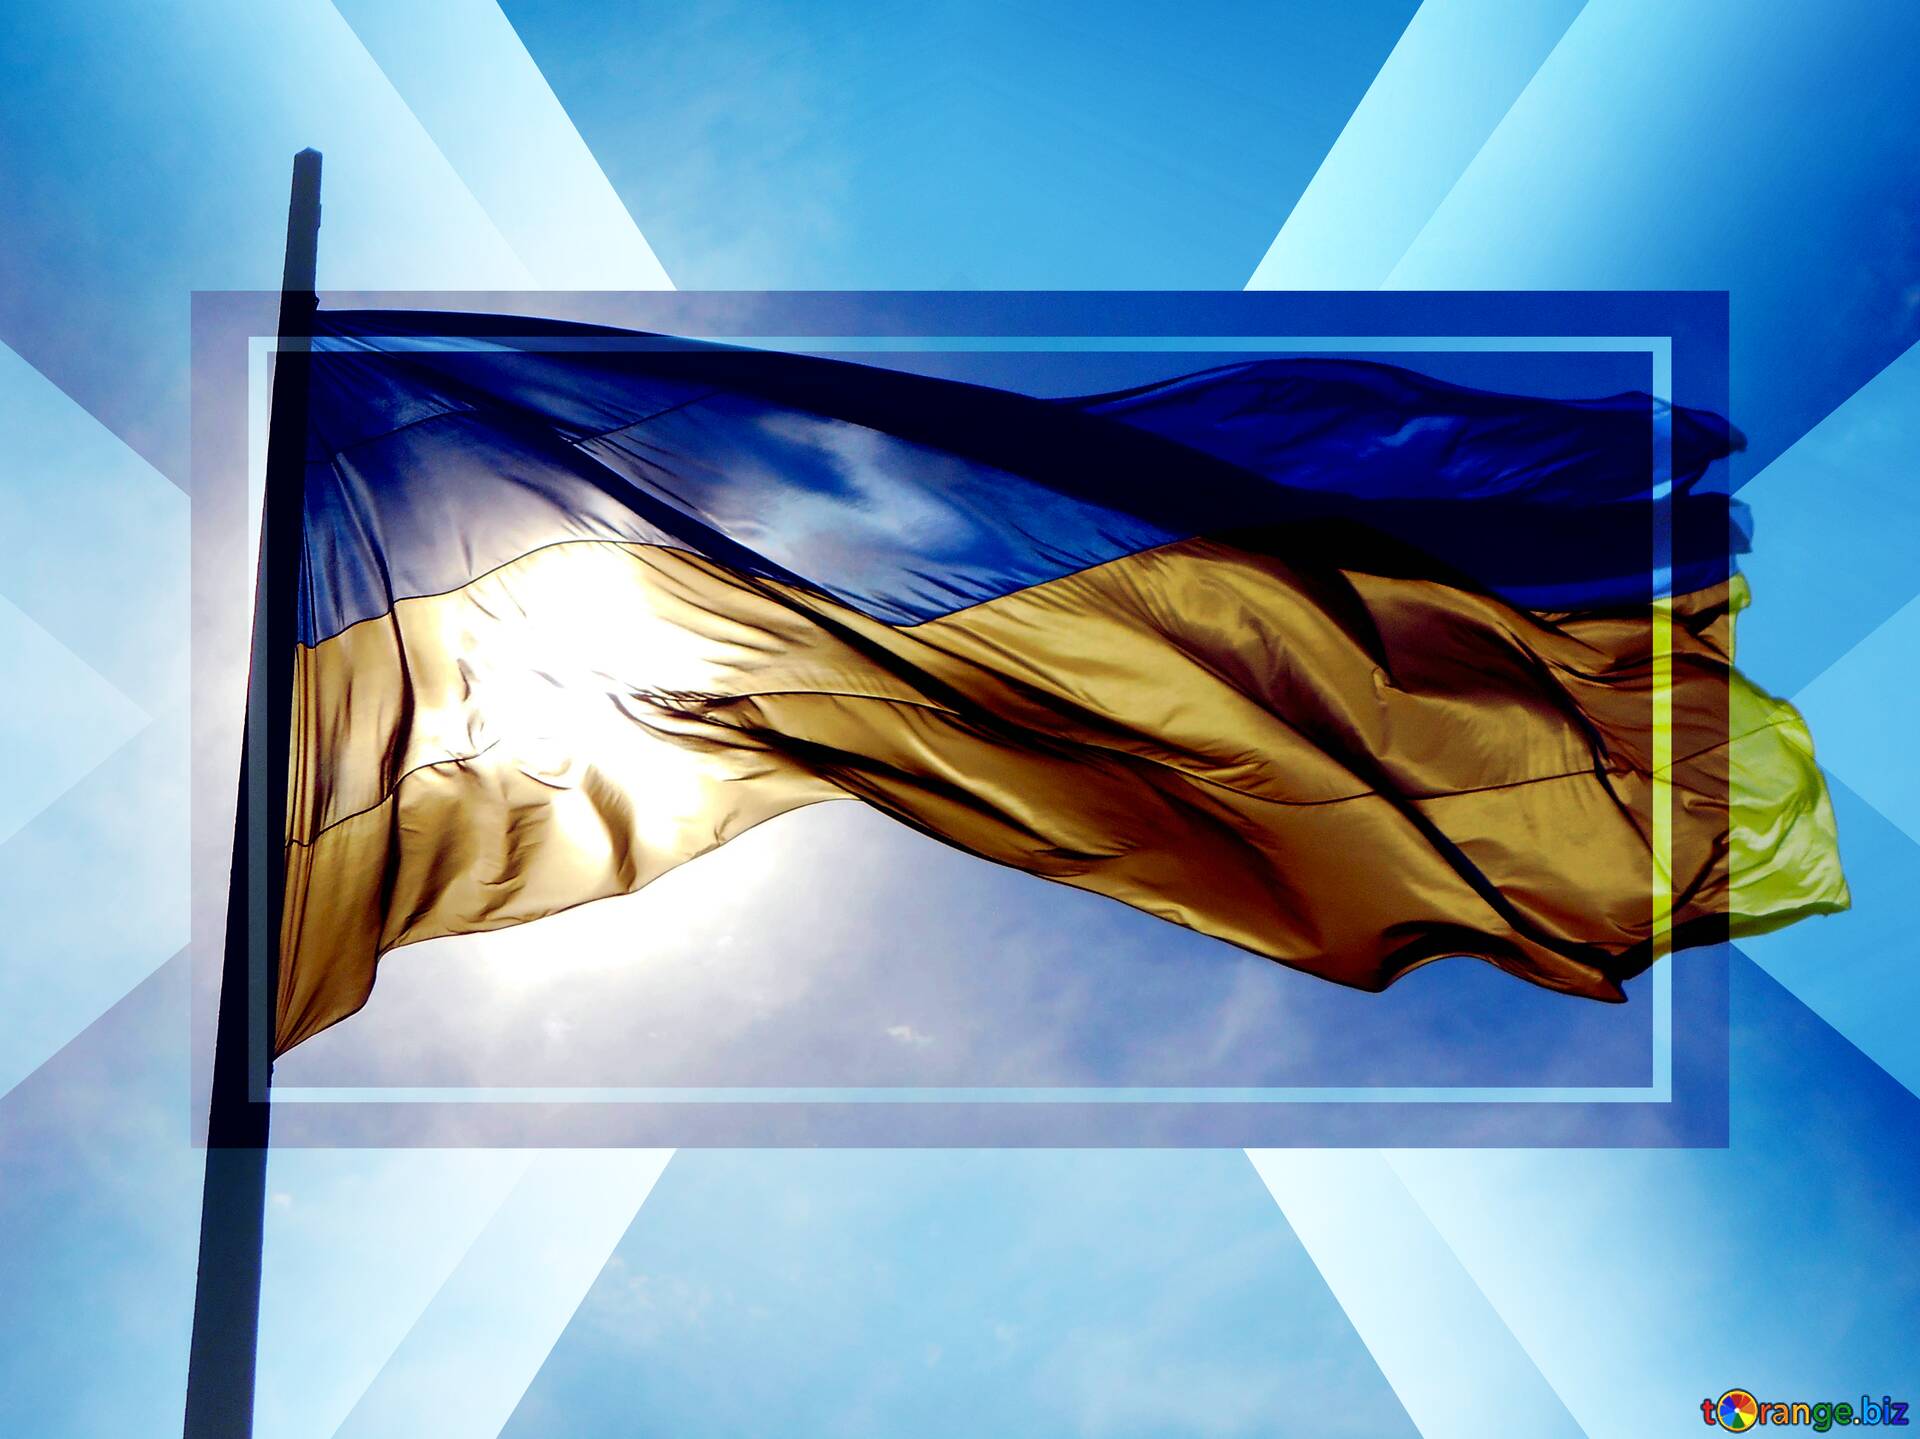 Đại diện cho lòng yêu nước và quốc gia Ukraine, lá cờ của nước này là một trong những biểu tượng đặc trưng của quốc gia. Nếu bạn trót yêu cờ Ukraine đầy bản sắc này, hãy tìm kiếm hoặc ghé thăm ảnh liên quan trên trang web của chúng tôi.